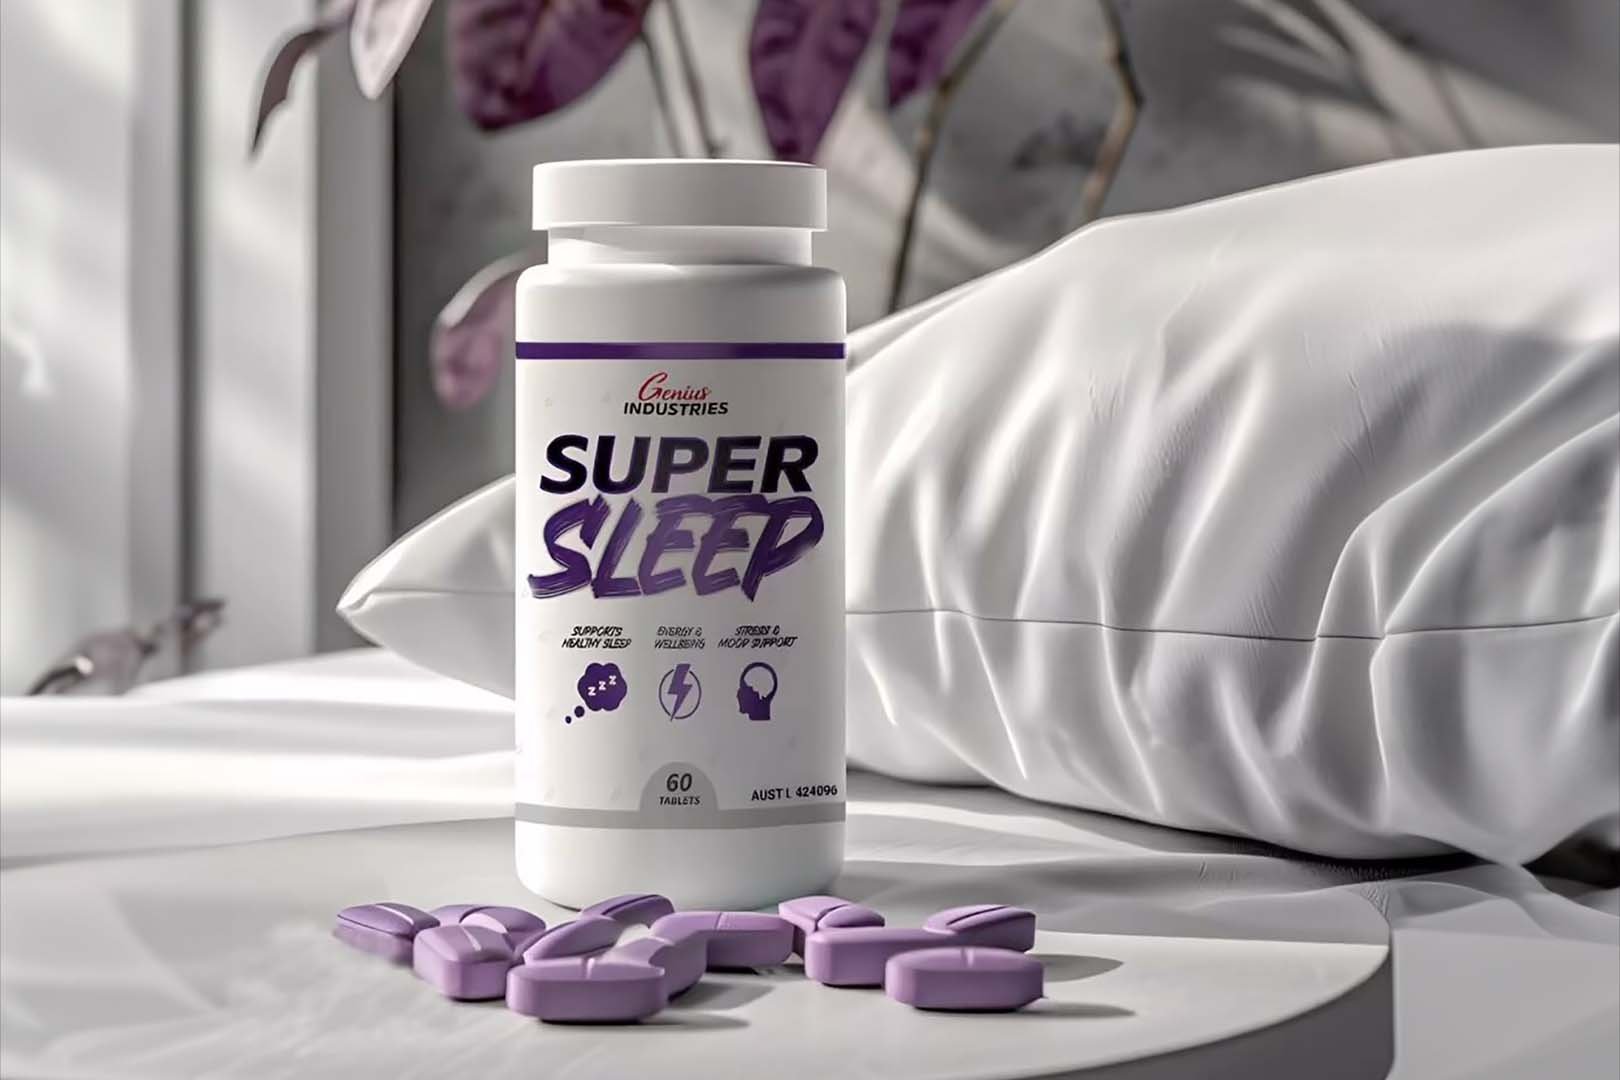 Genius Industries Super Sleep